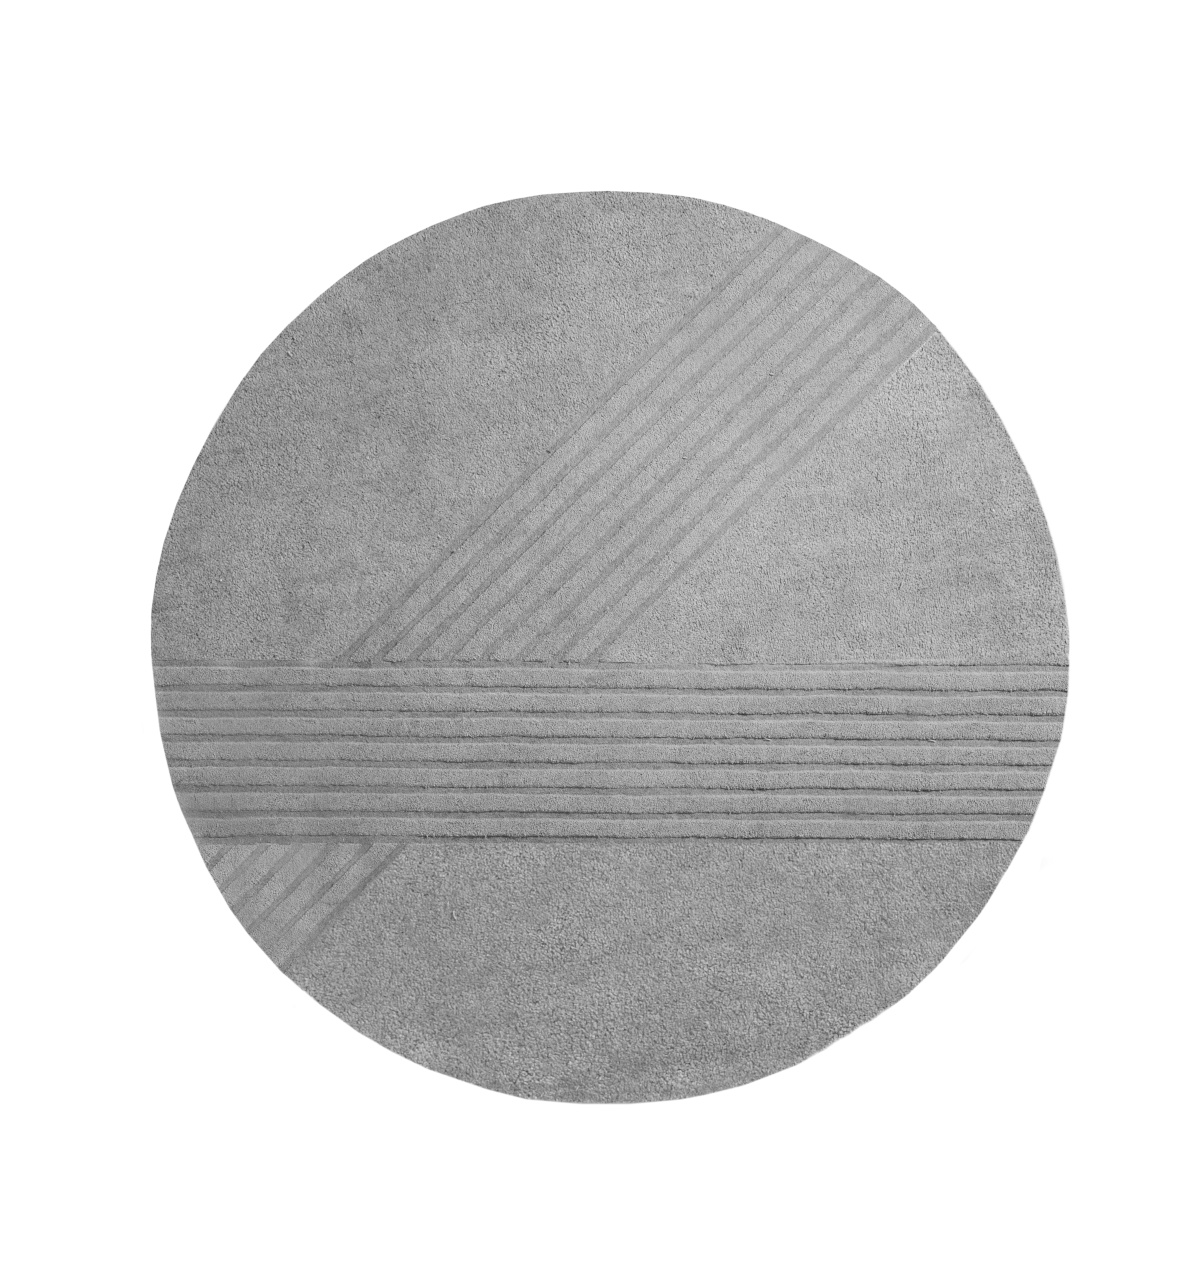 Kyoto Teppich, Ø 200 cm, grey